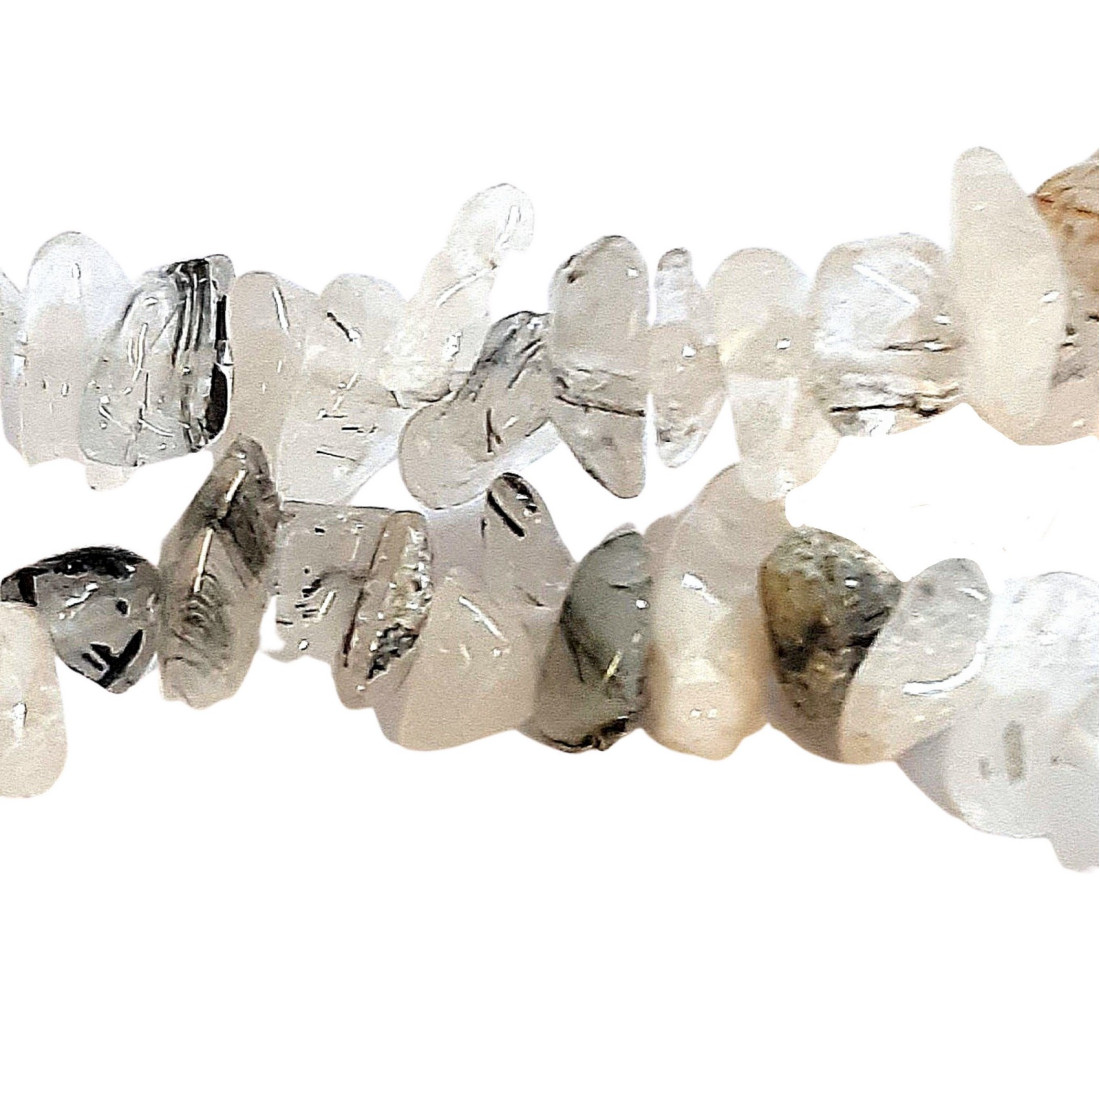 Fil de chips perles en Quartz à inclusions de Tourmaline - 90cm